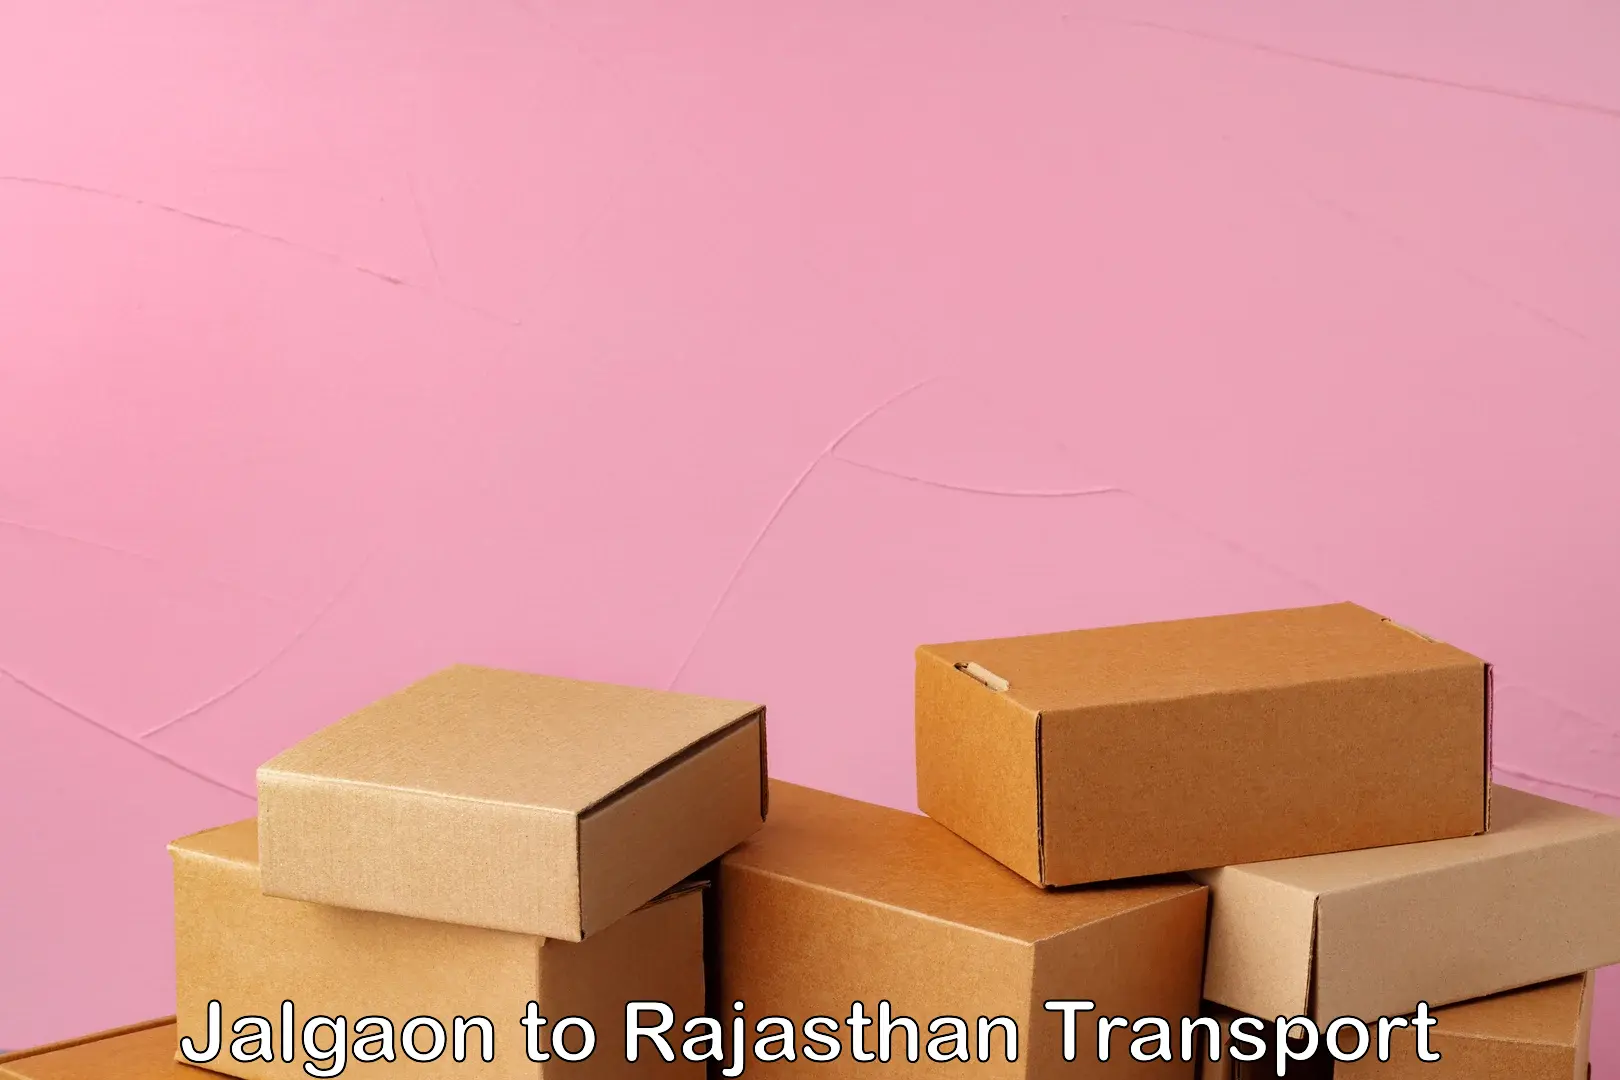 Furniture transport service Jalgaon to NIT Jaipur